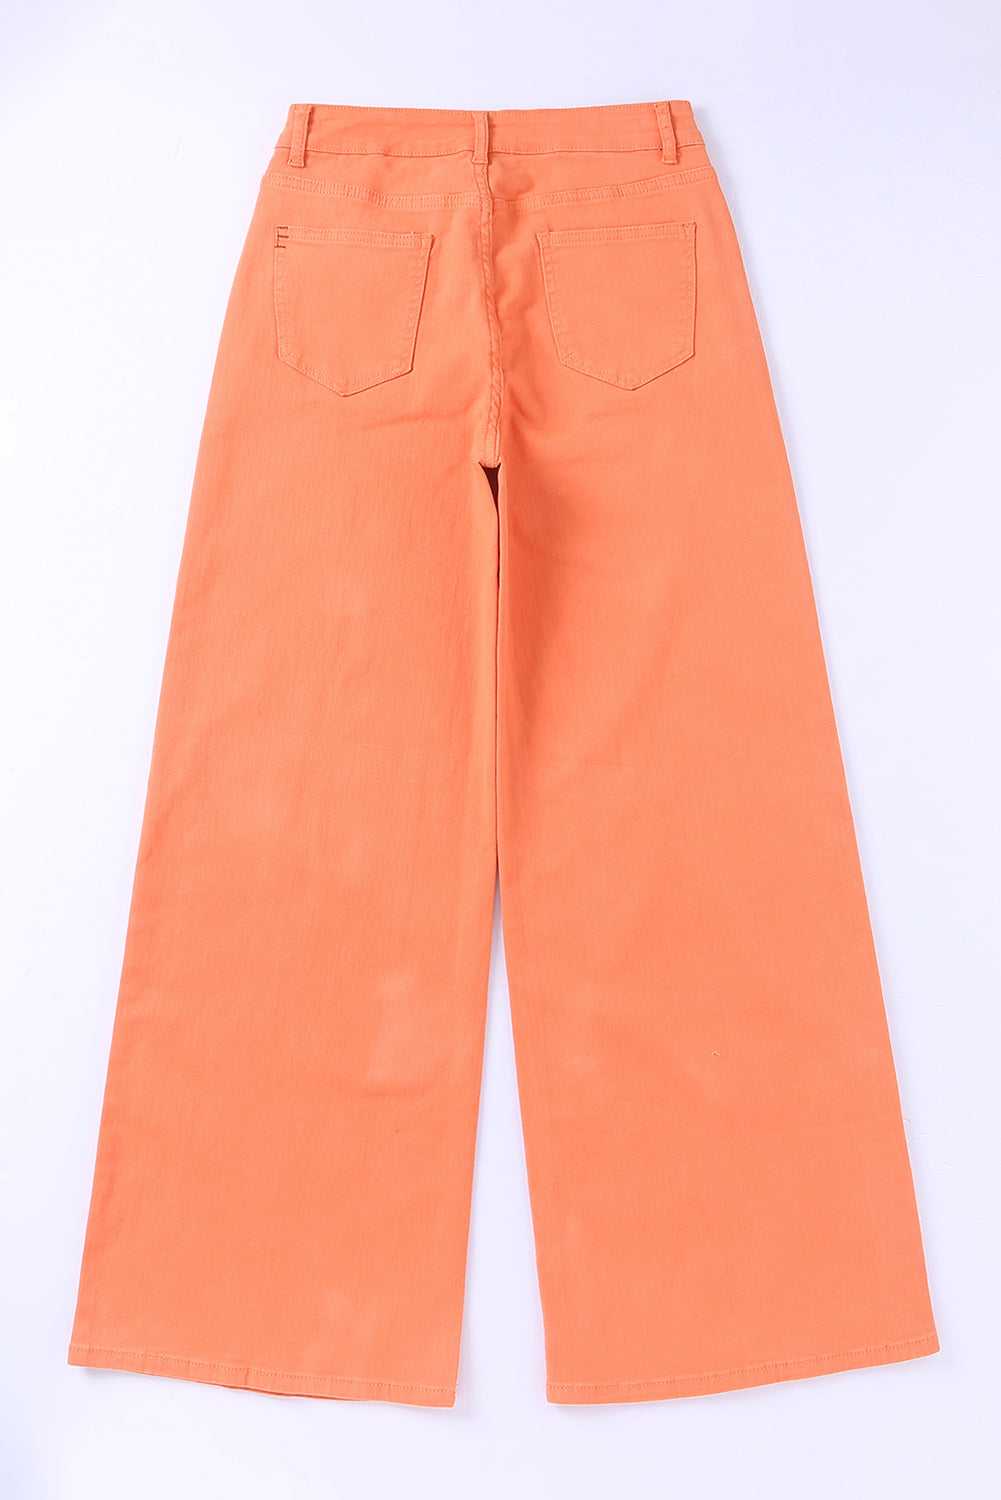 Jean large taille haute orange délavé à l'acide